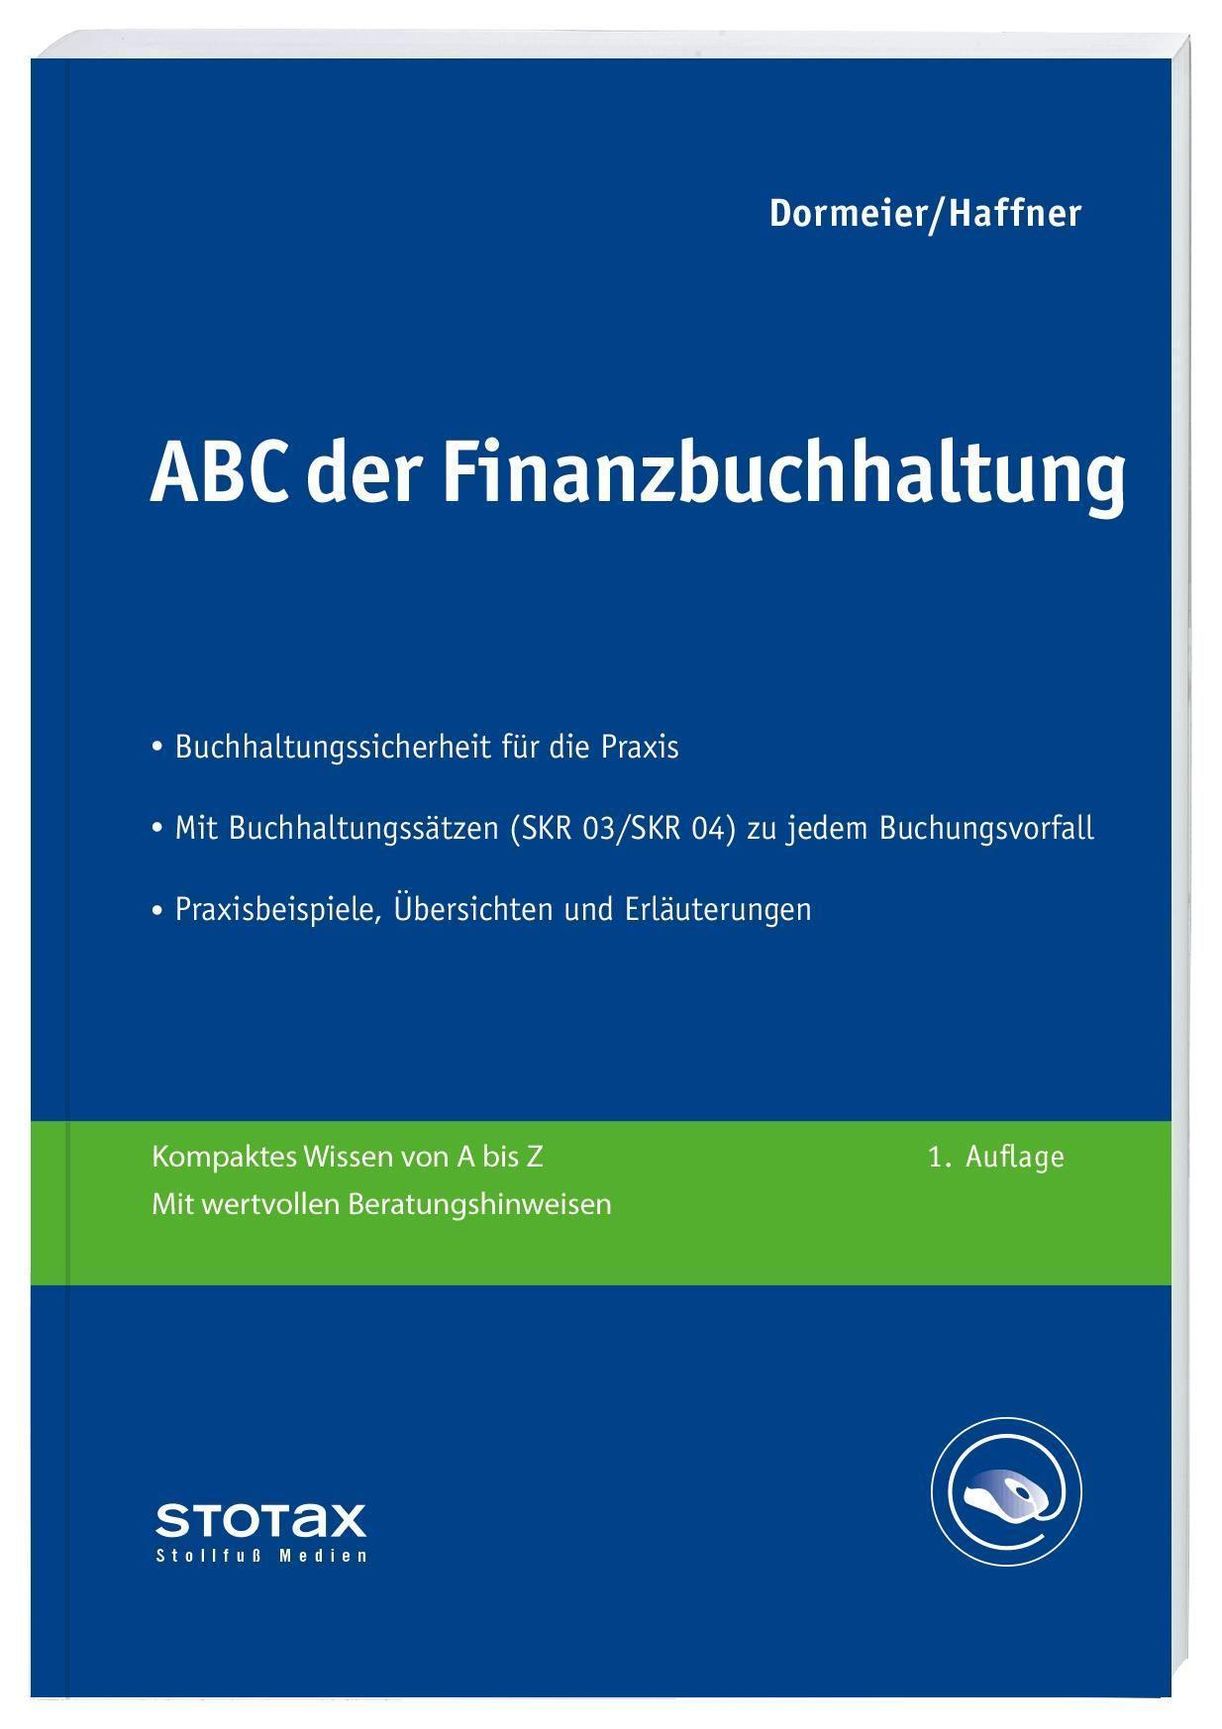 ABC der Finanzbuchhaltung Buch versandkostenfrei bei Weltbild.ch